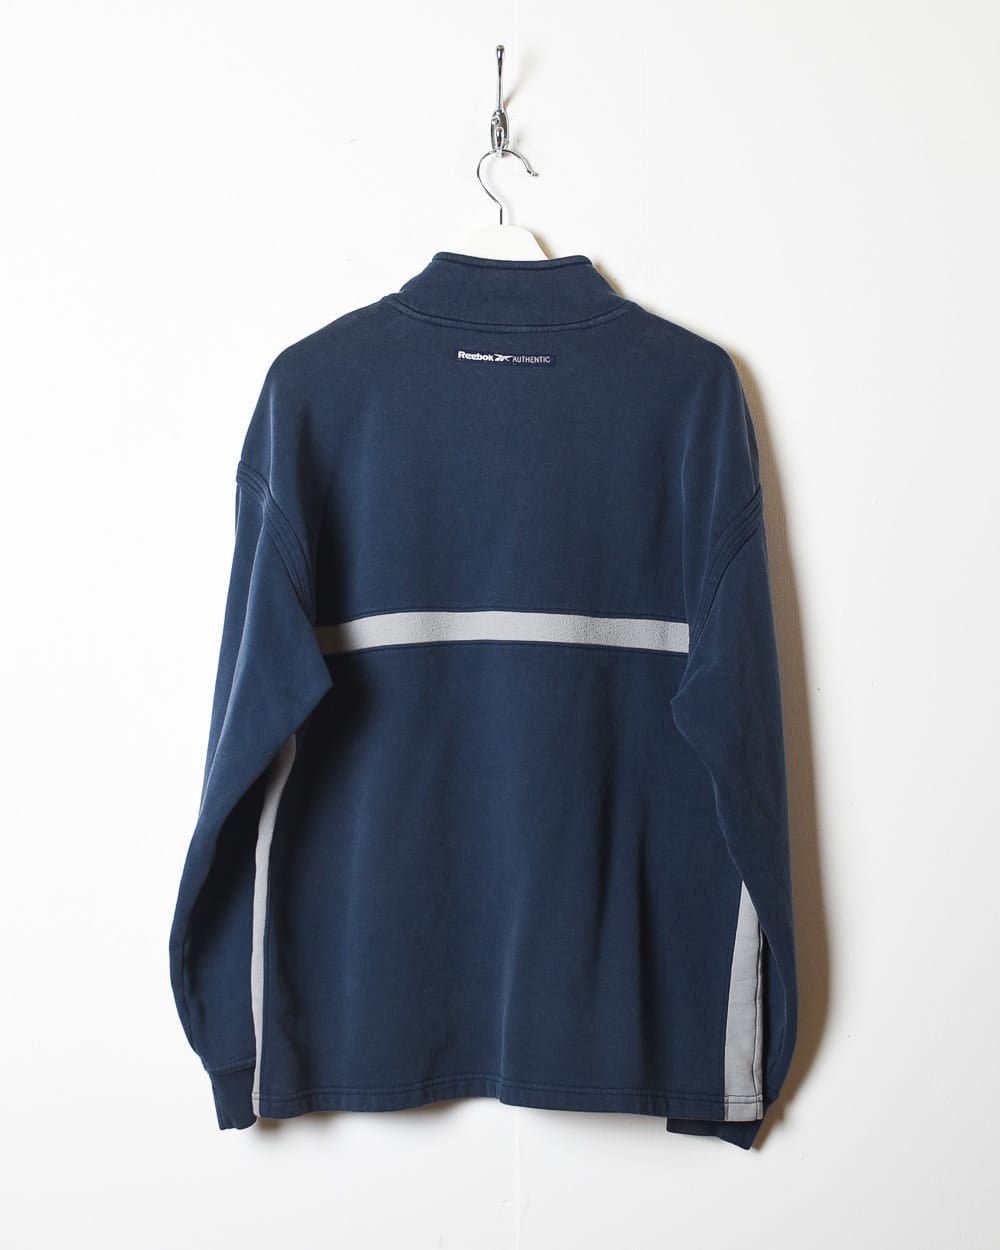 Navy Reebok Authentic 1/4 Zip Sweatshirt - Large